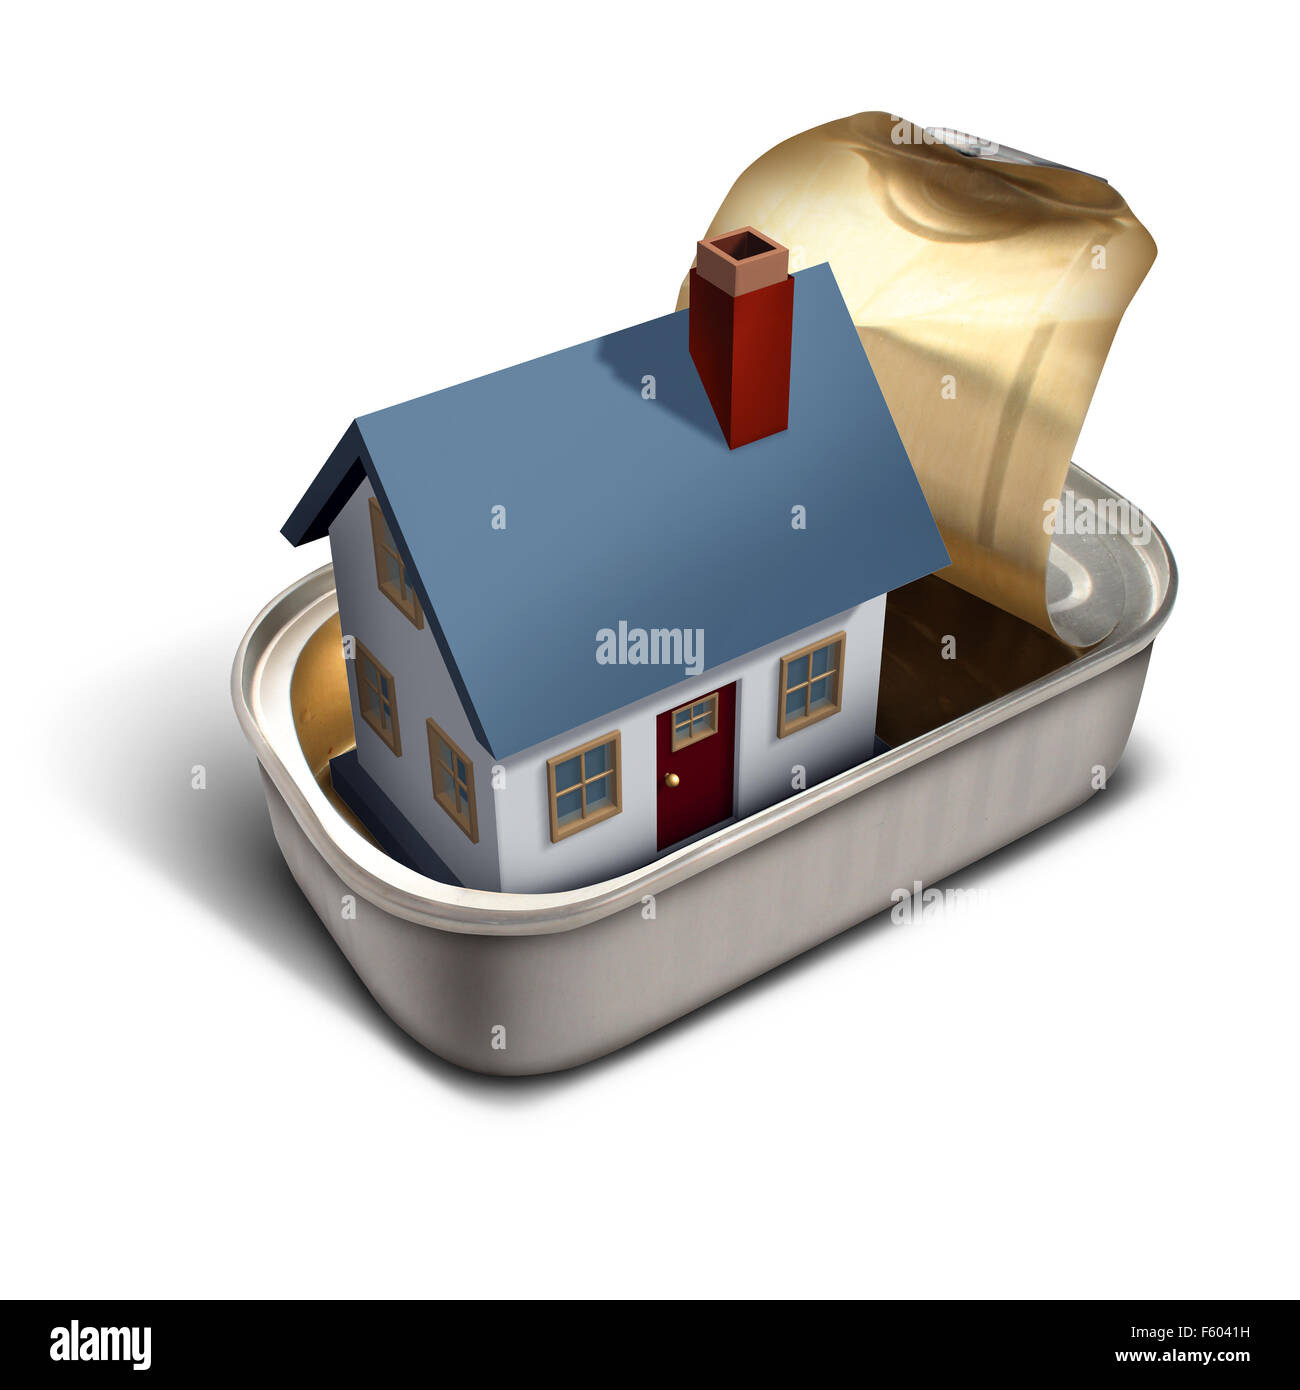 Limitée accueil immobilier déménagement time concept comme une maison de famille à l'intérieur d'une métaphore de la sardine peut vivre dans un débordement de l'étroit Banque D'Images